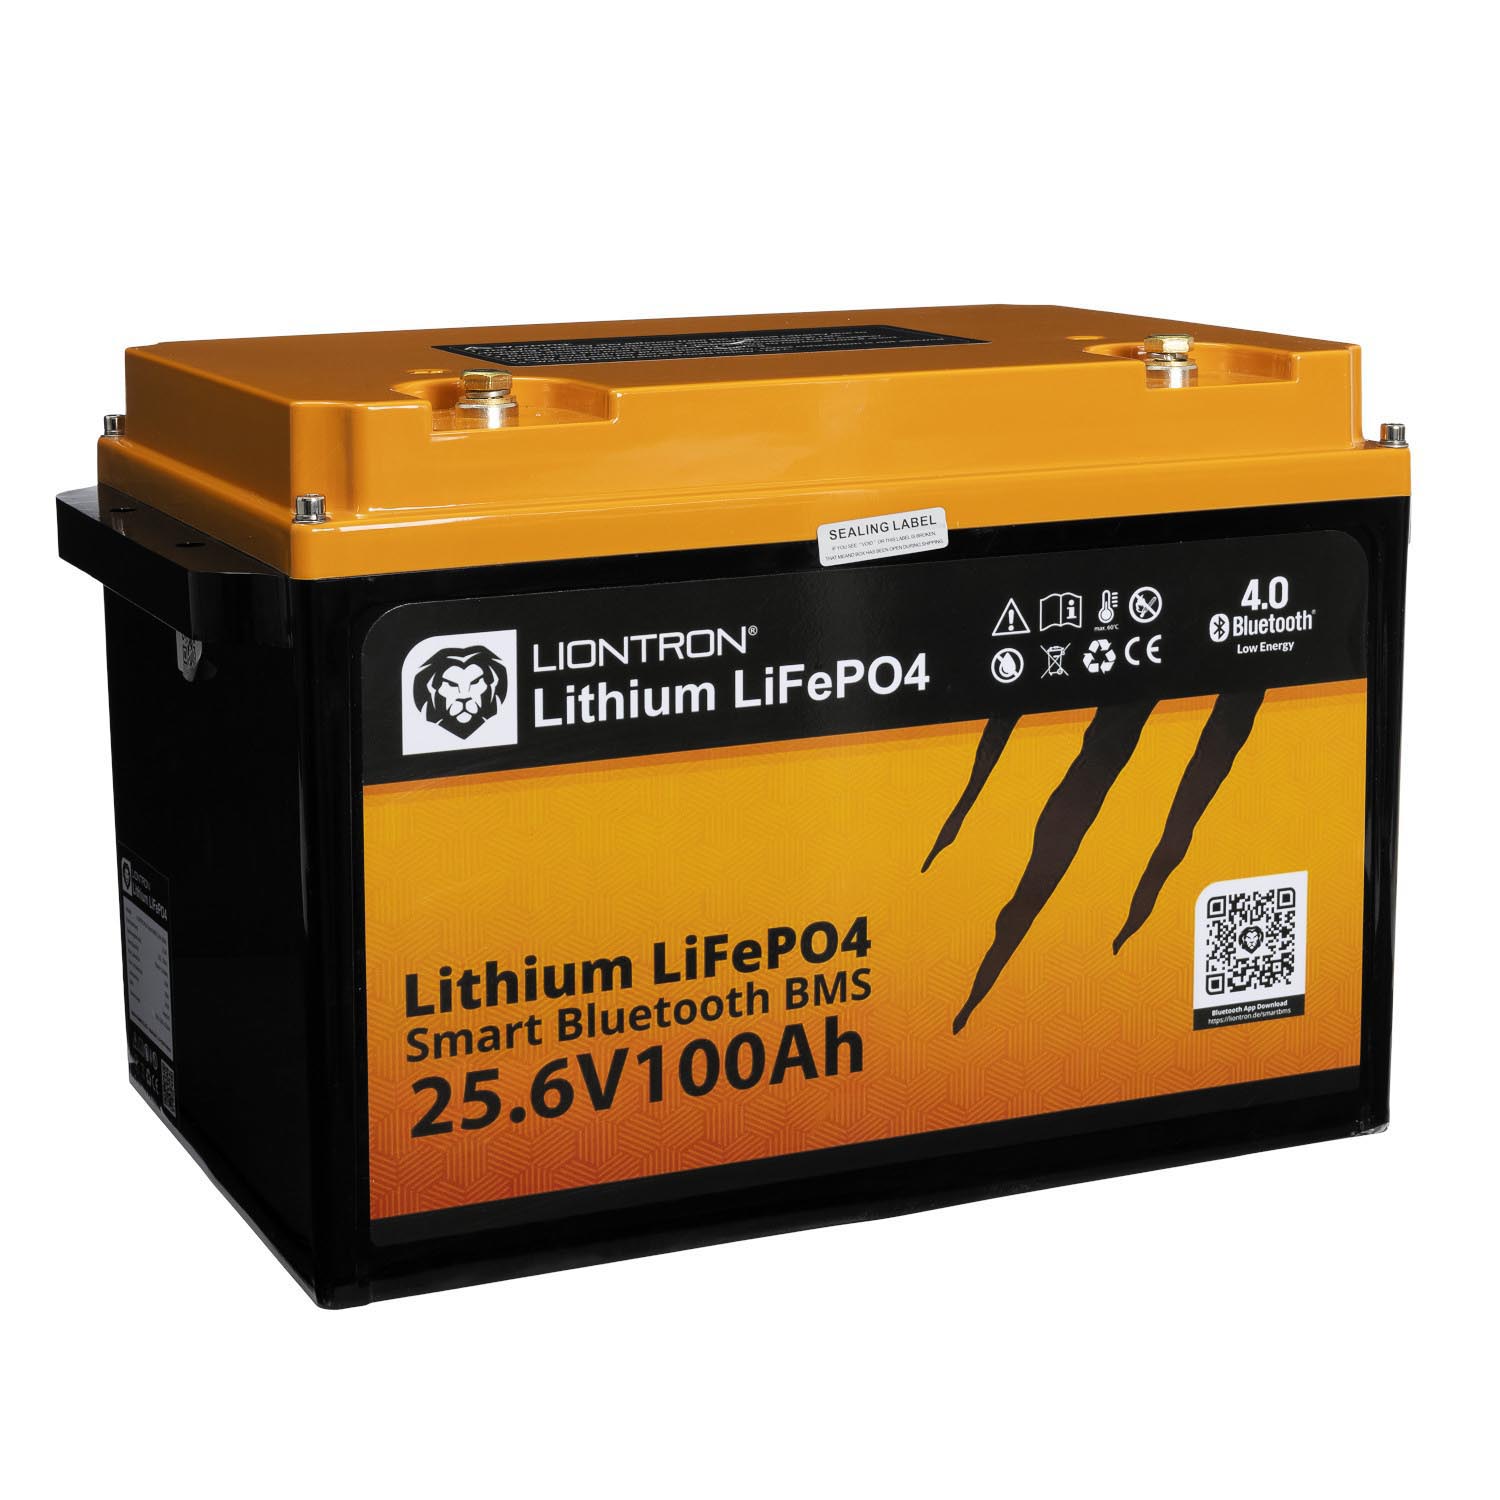 Liontron 100Ah 25,6V LiFePO4 Lithium Batterie BMS Bluetooth mit App Arctic und Marine (USt-befreit nach §12 Abs.3 Nr. 1 S.1 UStG)